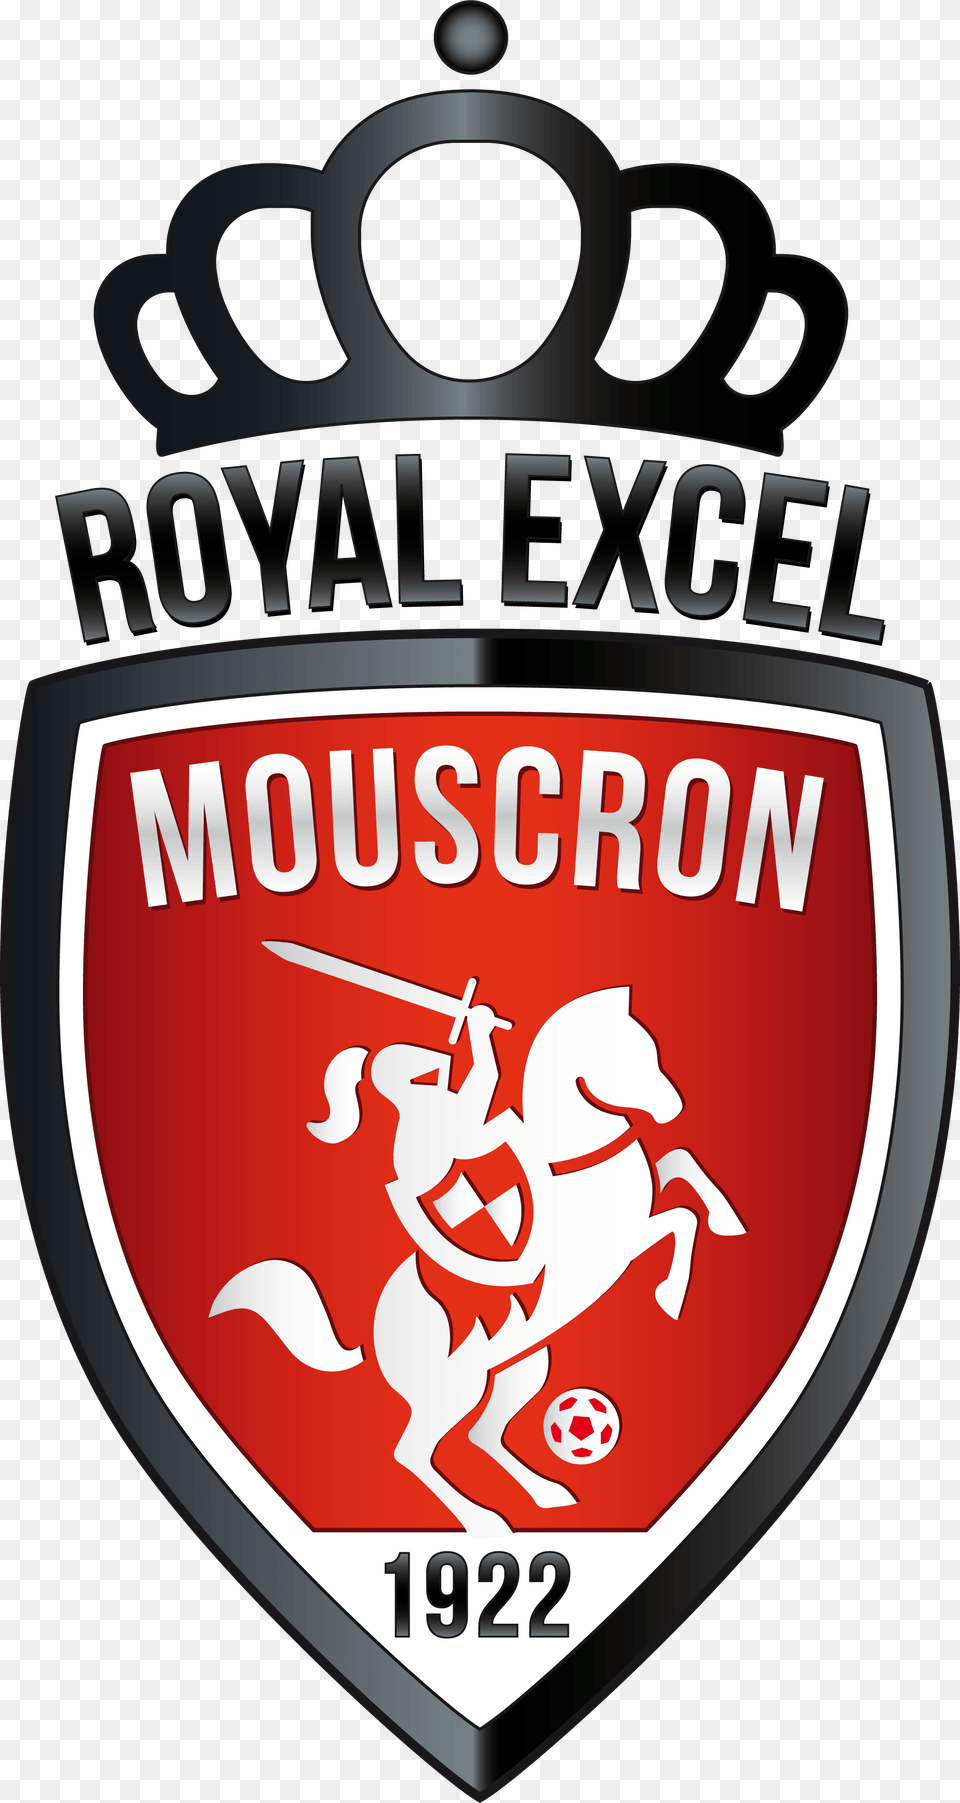 Excel Royal Excel Mouscron Logo, Badge, Symbol, Food, Ketchup Free Transparent Png